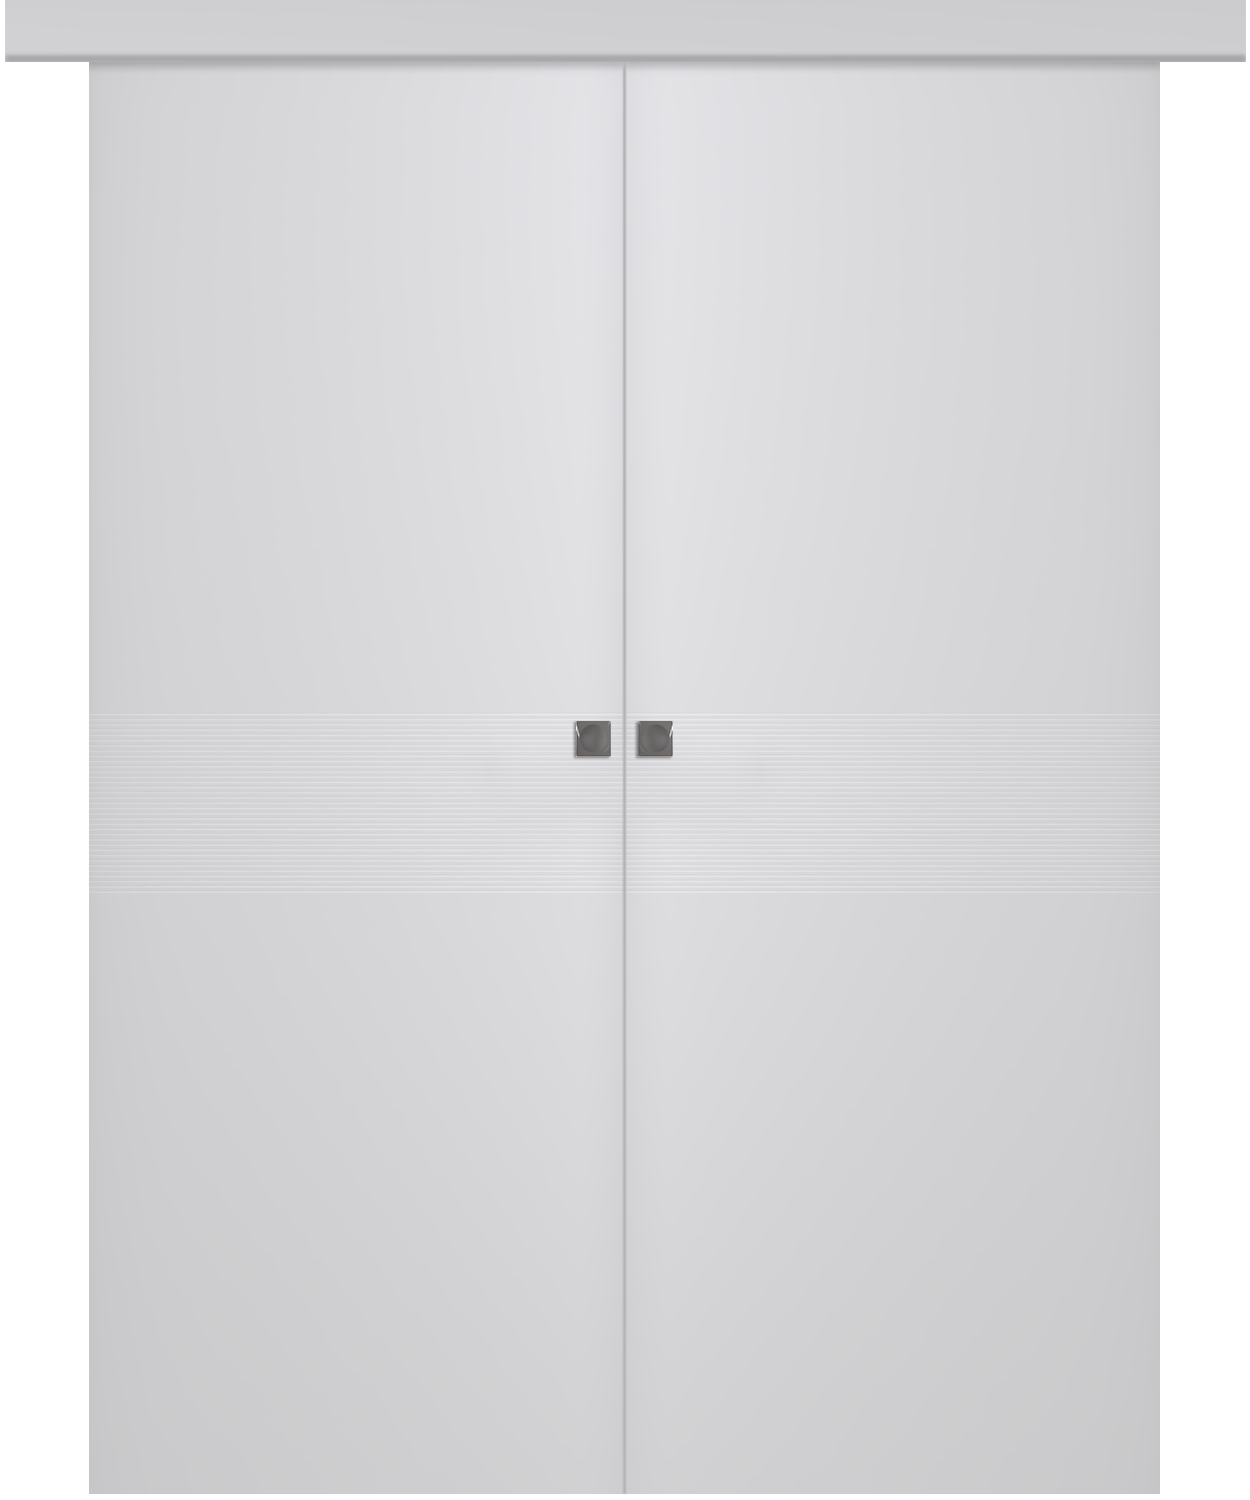 Дверное Полотно Пвдгщ "Ивент 2" Эмаль Белый 2,0-0,8 Smart Core Купе двойное